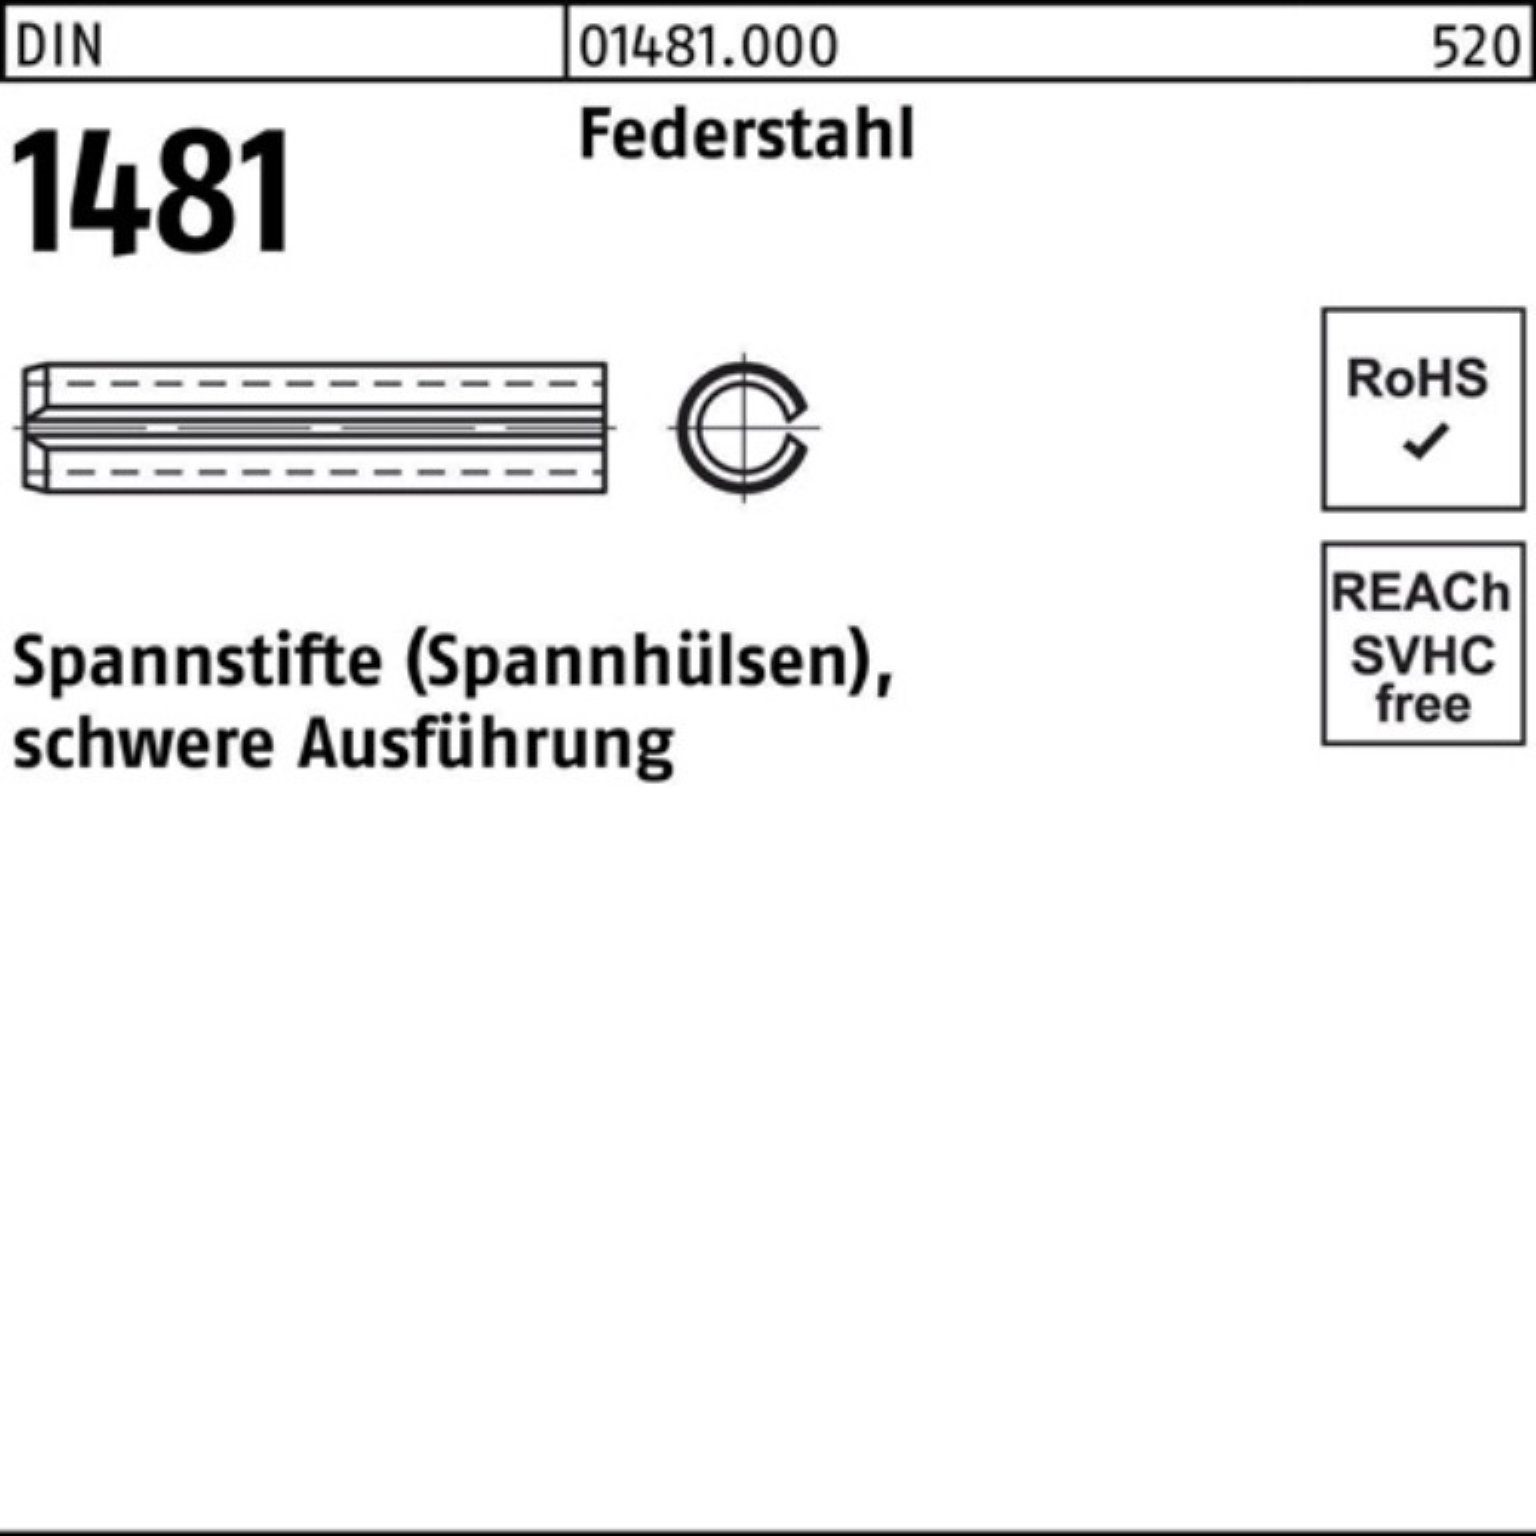 Reyher Spannstift 100er Pack Spannstift DIN 1481 10x 70 Federstahl schwere Ausführung 1